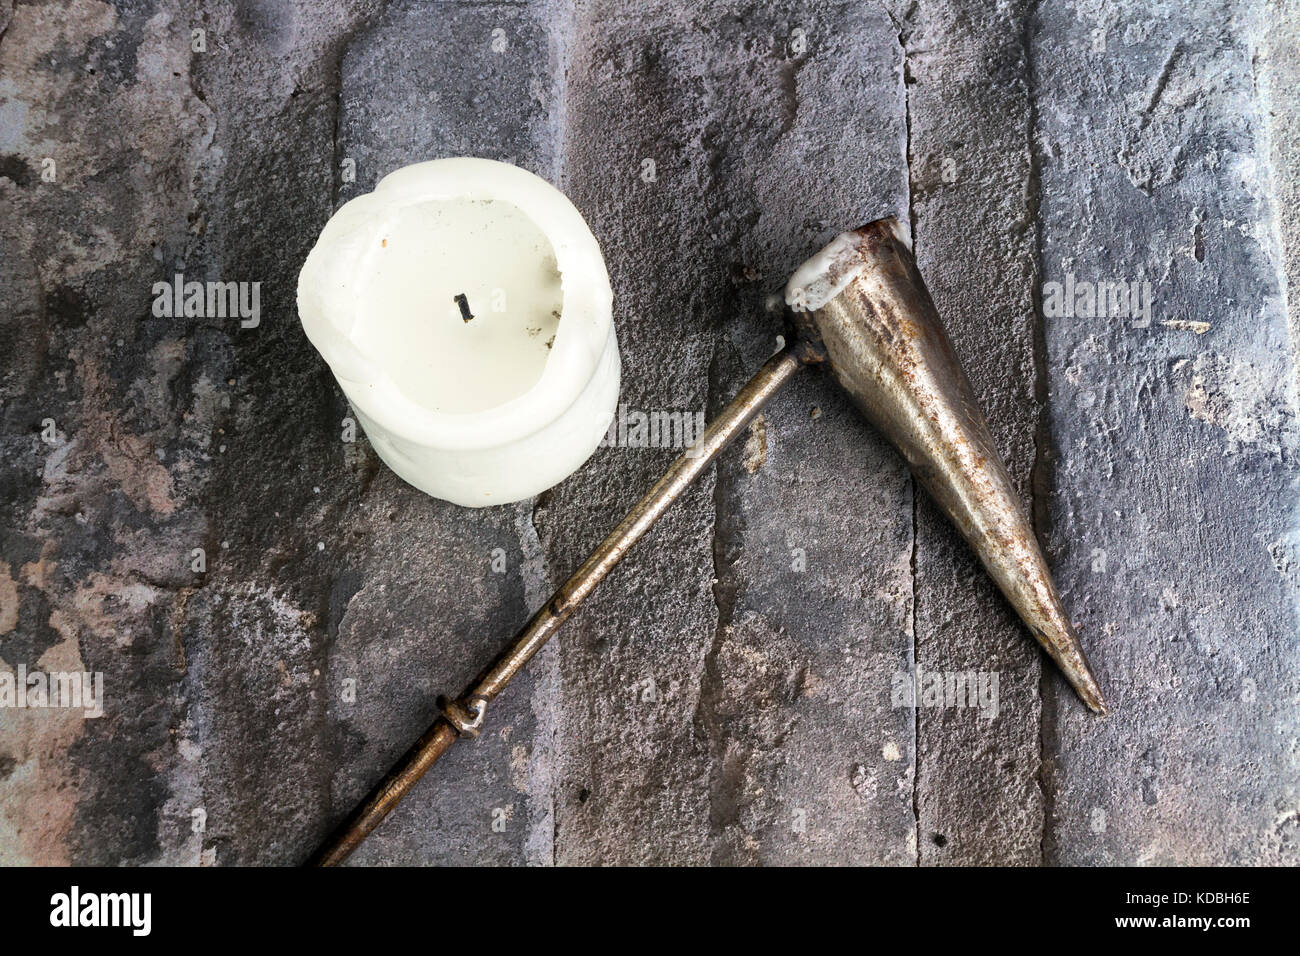 Weiße Kirche Kerze mit einem Metall Kerzenlöscher auf einem Stein Hintergrund Stockfoto